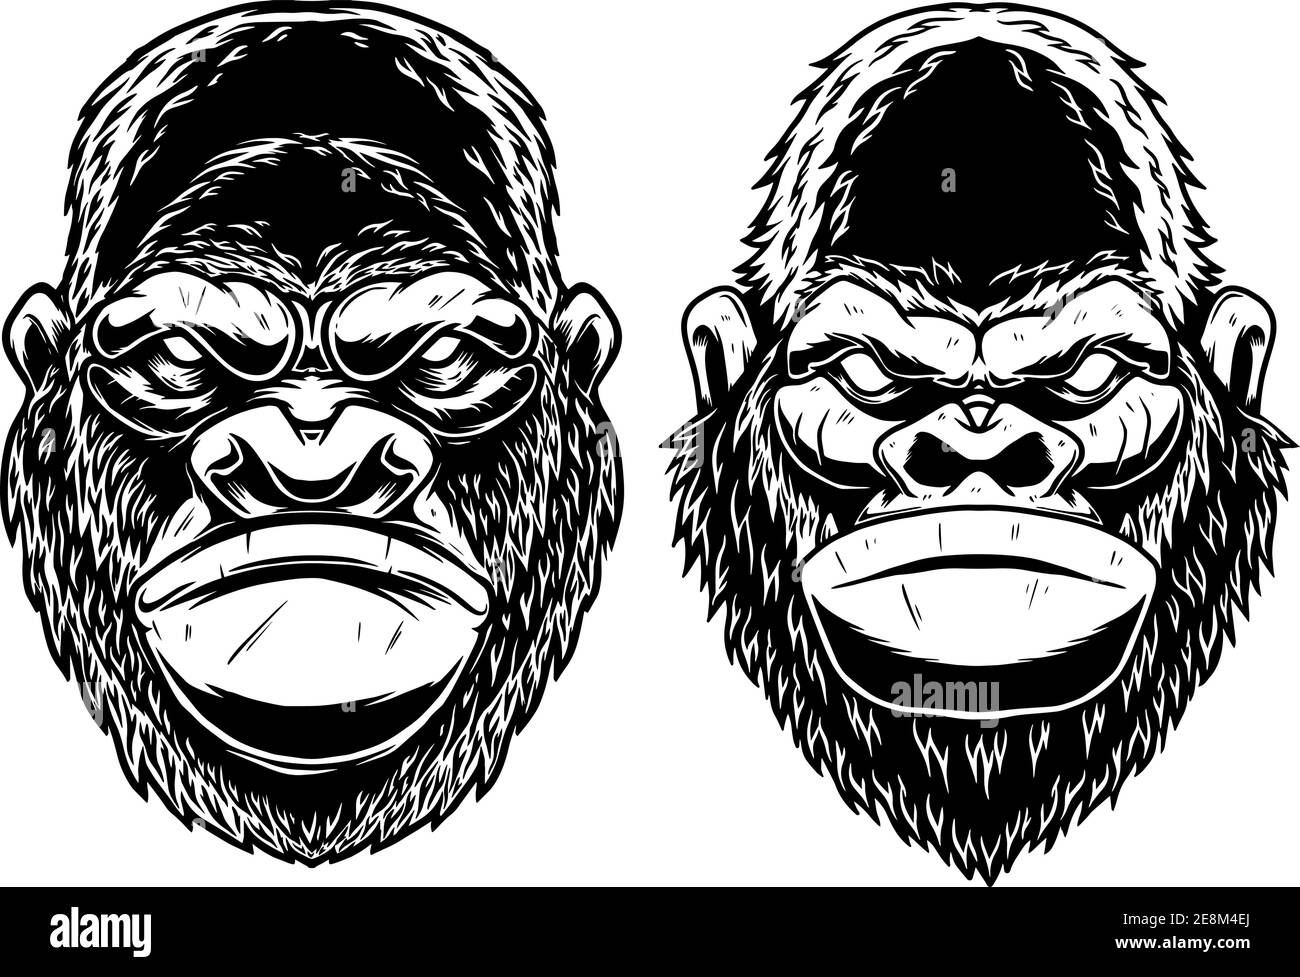 Satz von Illustrationen des Kopfes von Gorilla Affe im Vintage-monochromen Stil. Gestaltungselement für Logo, Emblem, Schild, Plakat, Karte, Banner. Vektorgrafik Stock Vektor